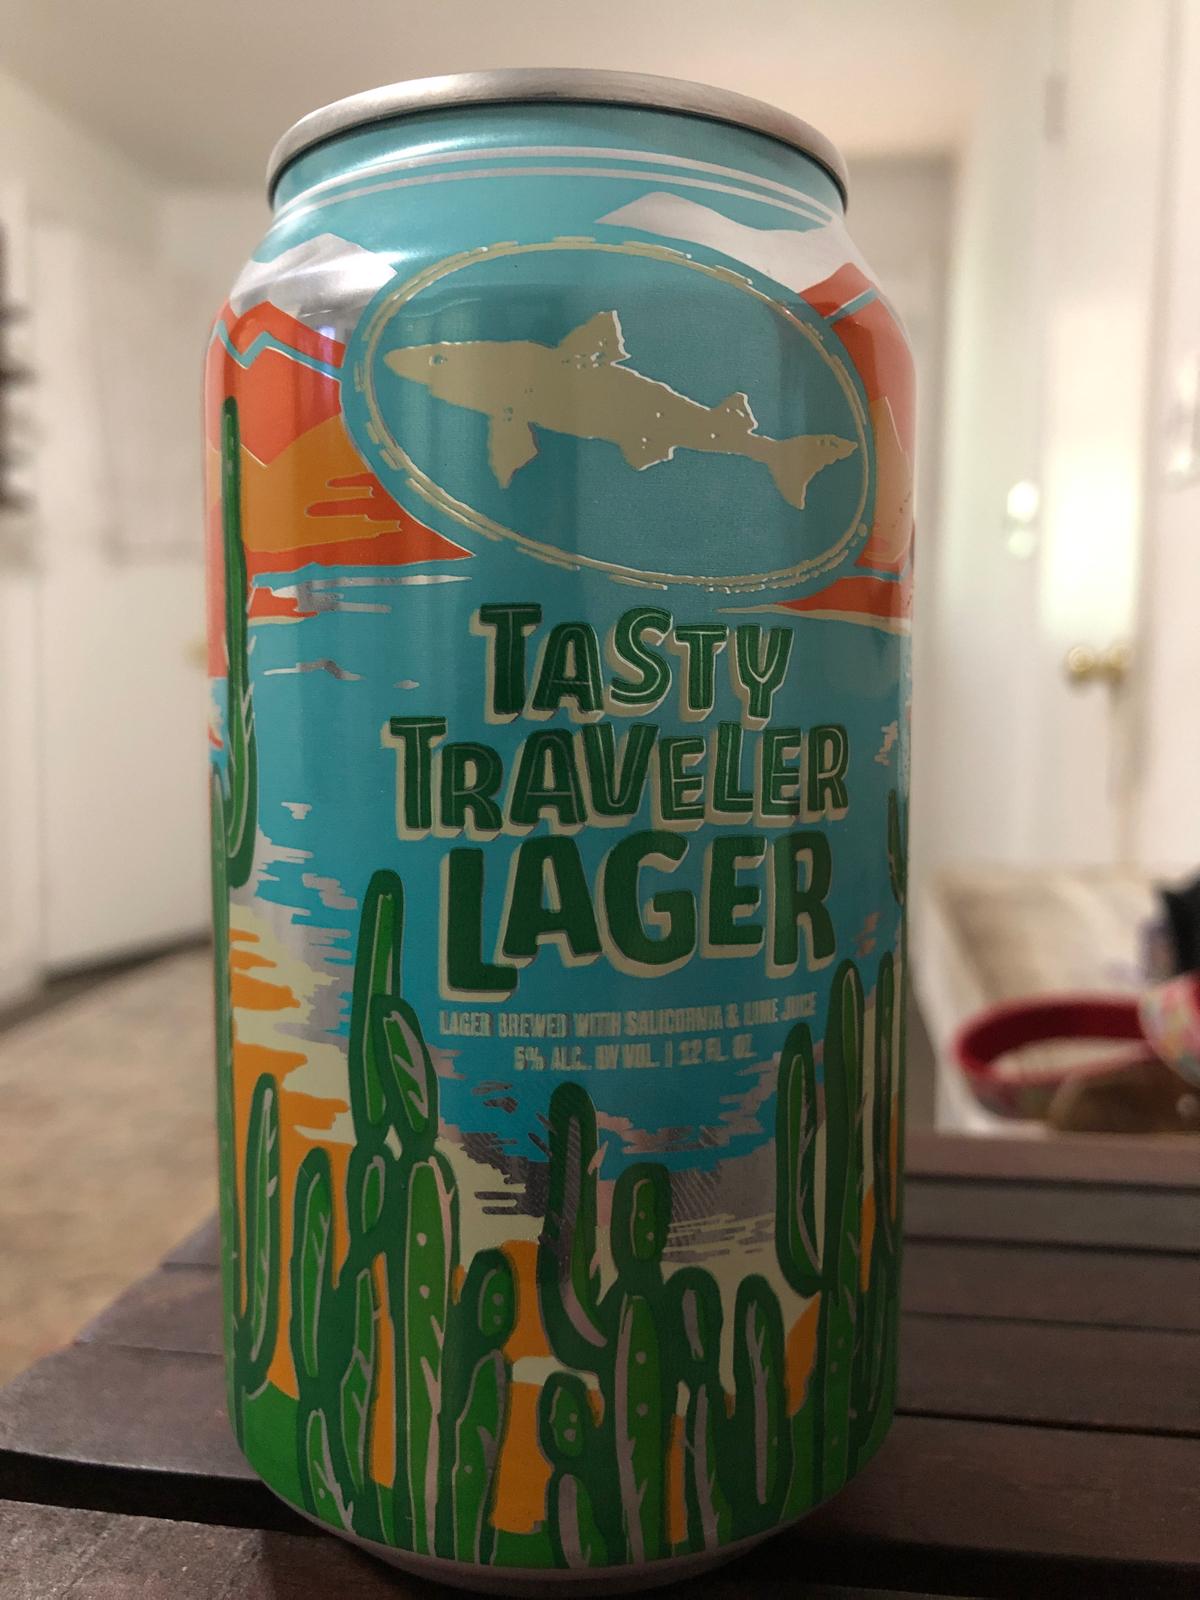 Tasty Traveler Lager